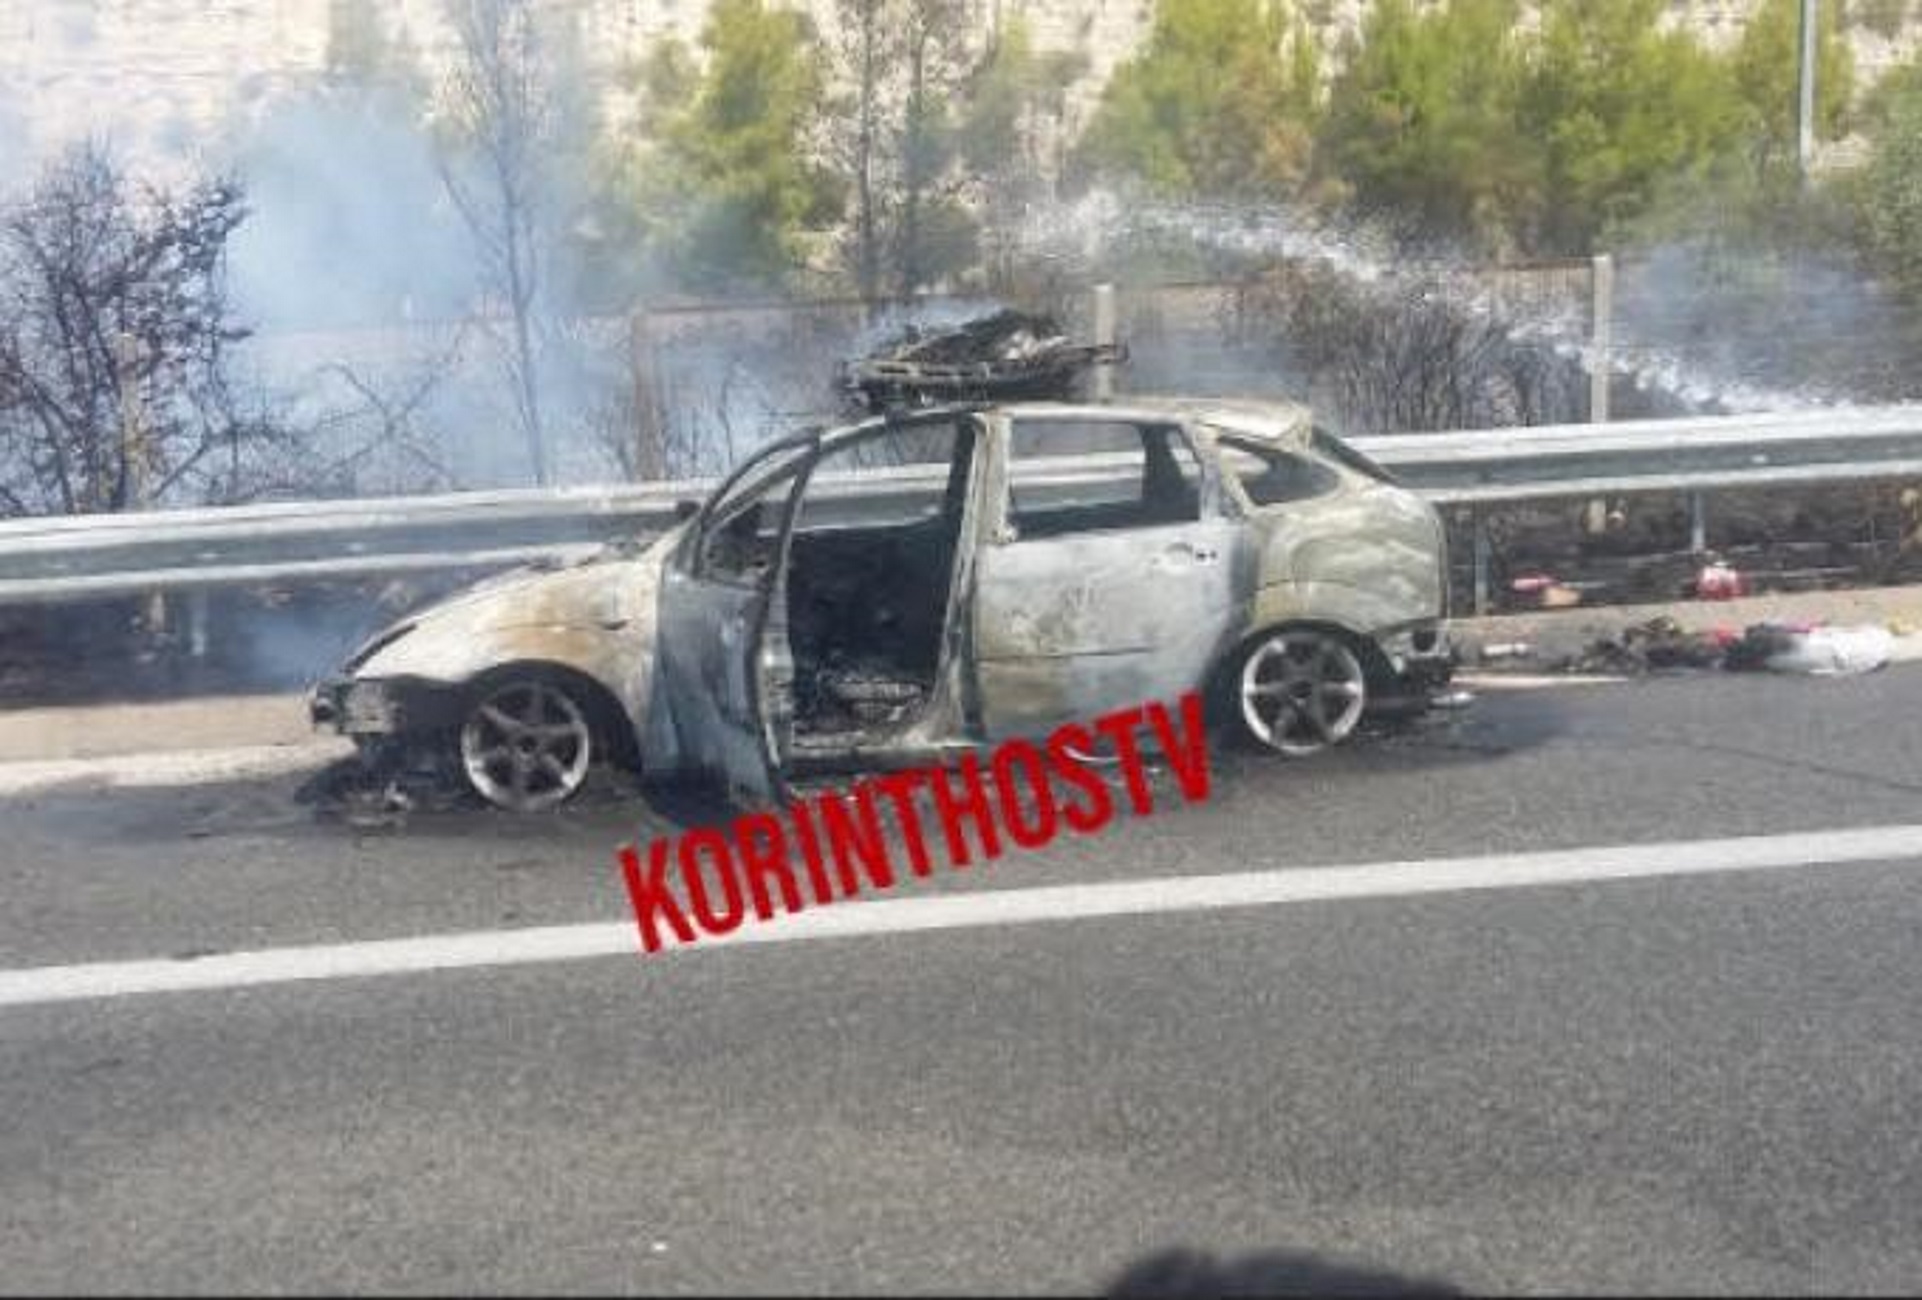 Εθνική Οδός Αθηνών – Κορίνθου: Αυτοκίνητο πήρε φωτιά εν κινήσει – Πετάχτηκαν από μέσα πέντε άτομα [pic]